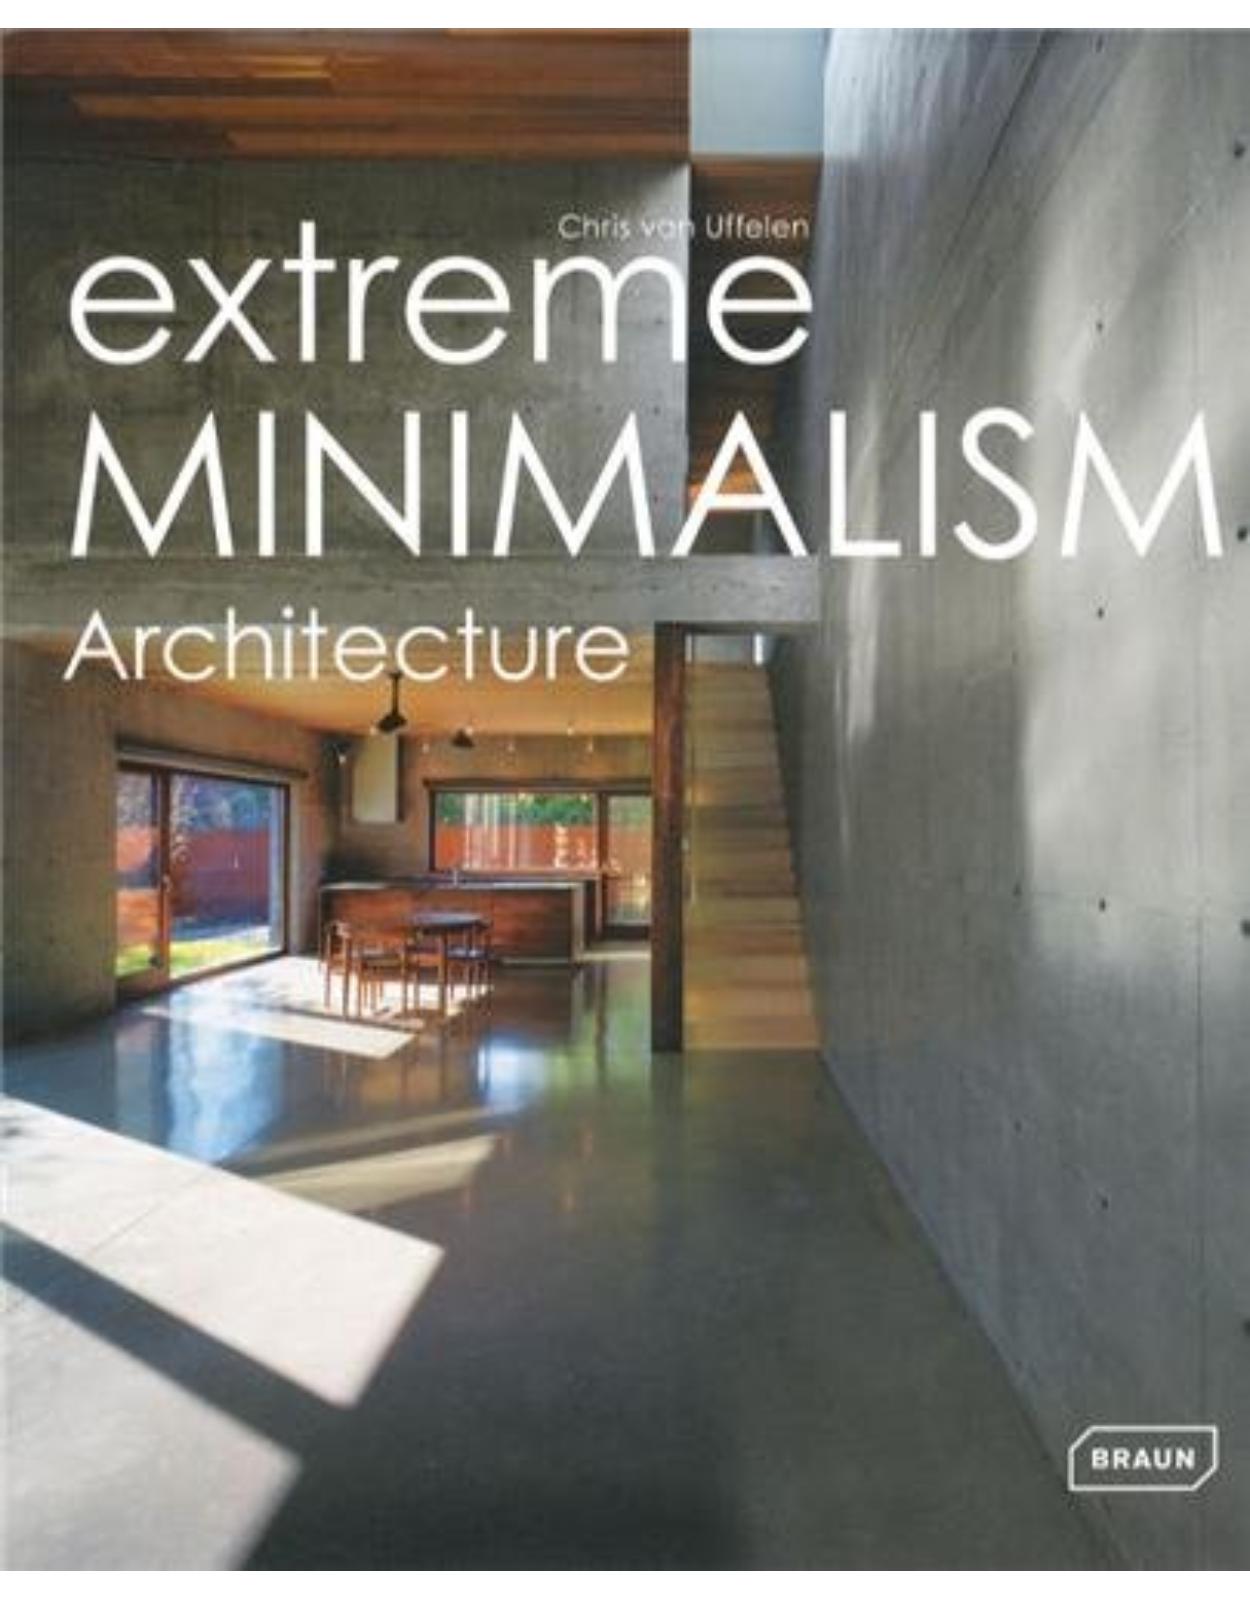 Extreme Minimalism: Architecture (Experimental